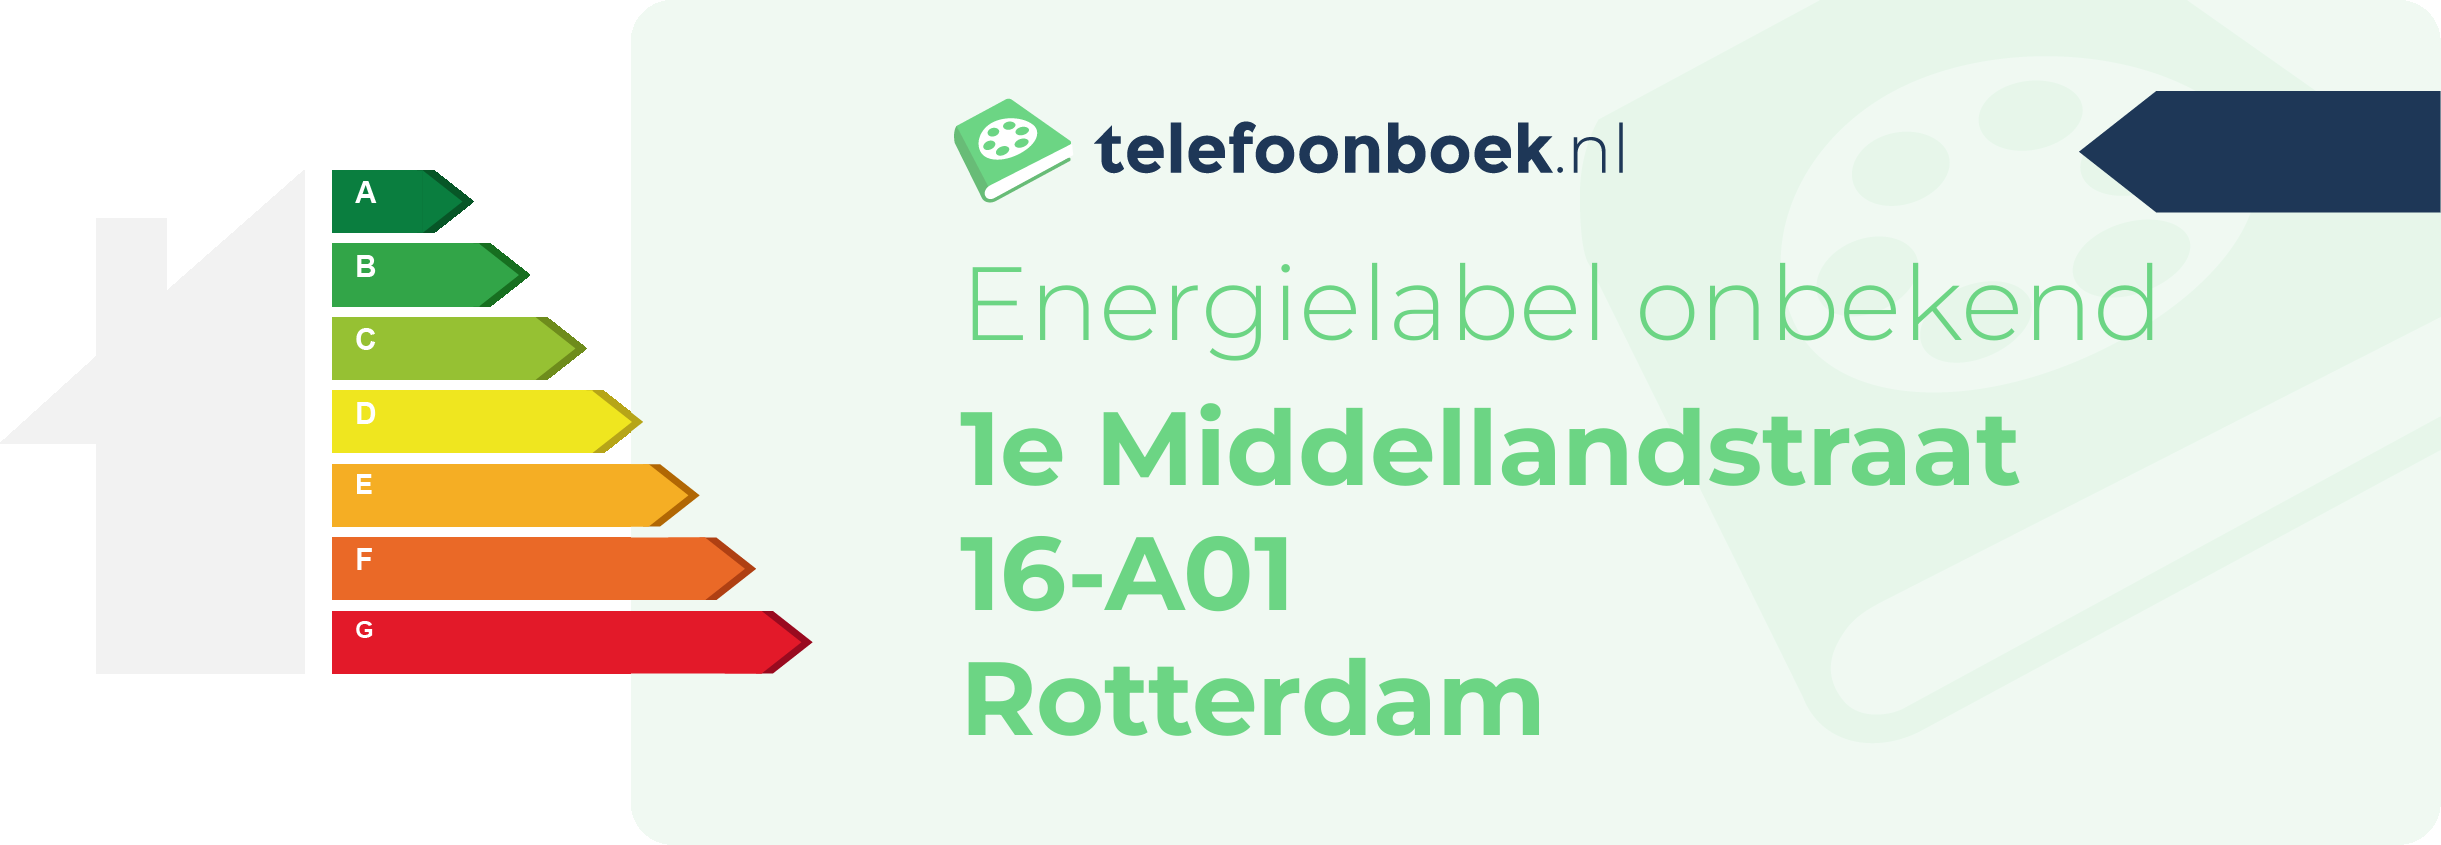 Energielabel 1e Middellandstraat 16-A01 Rotterdam